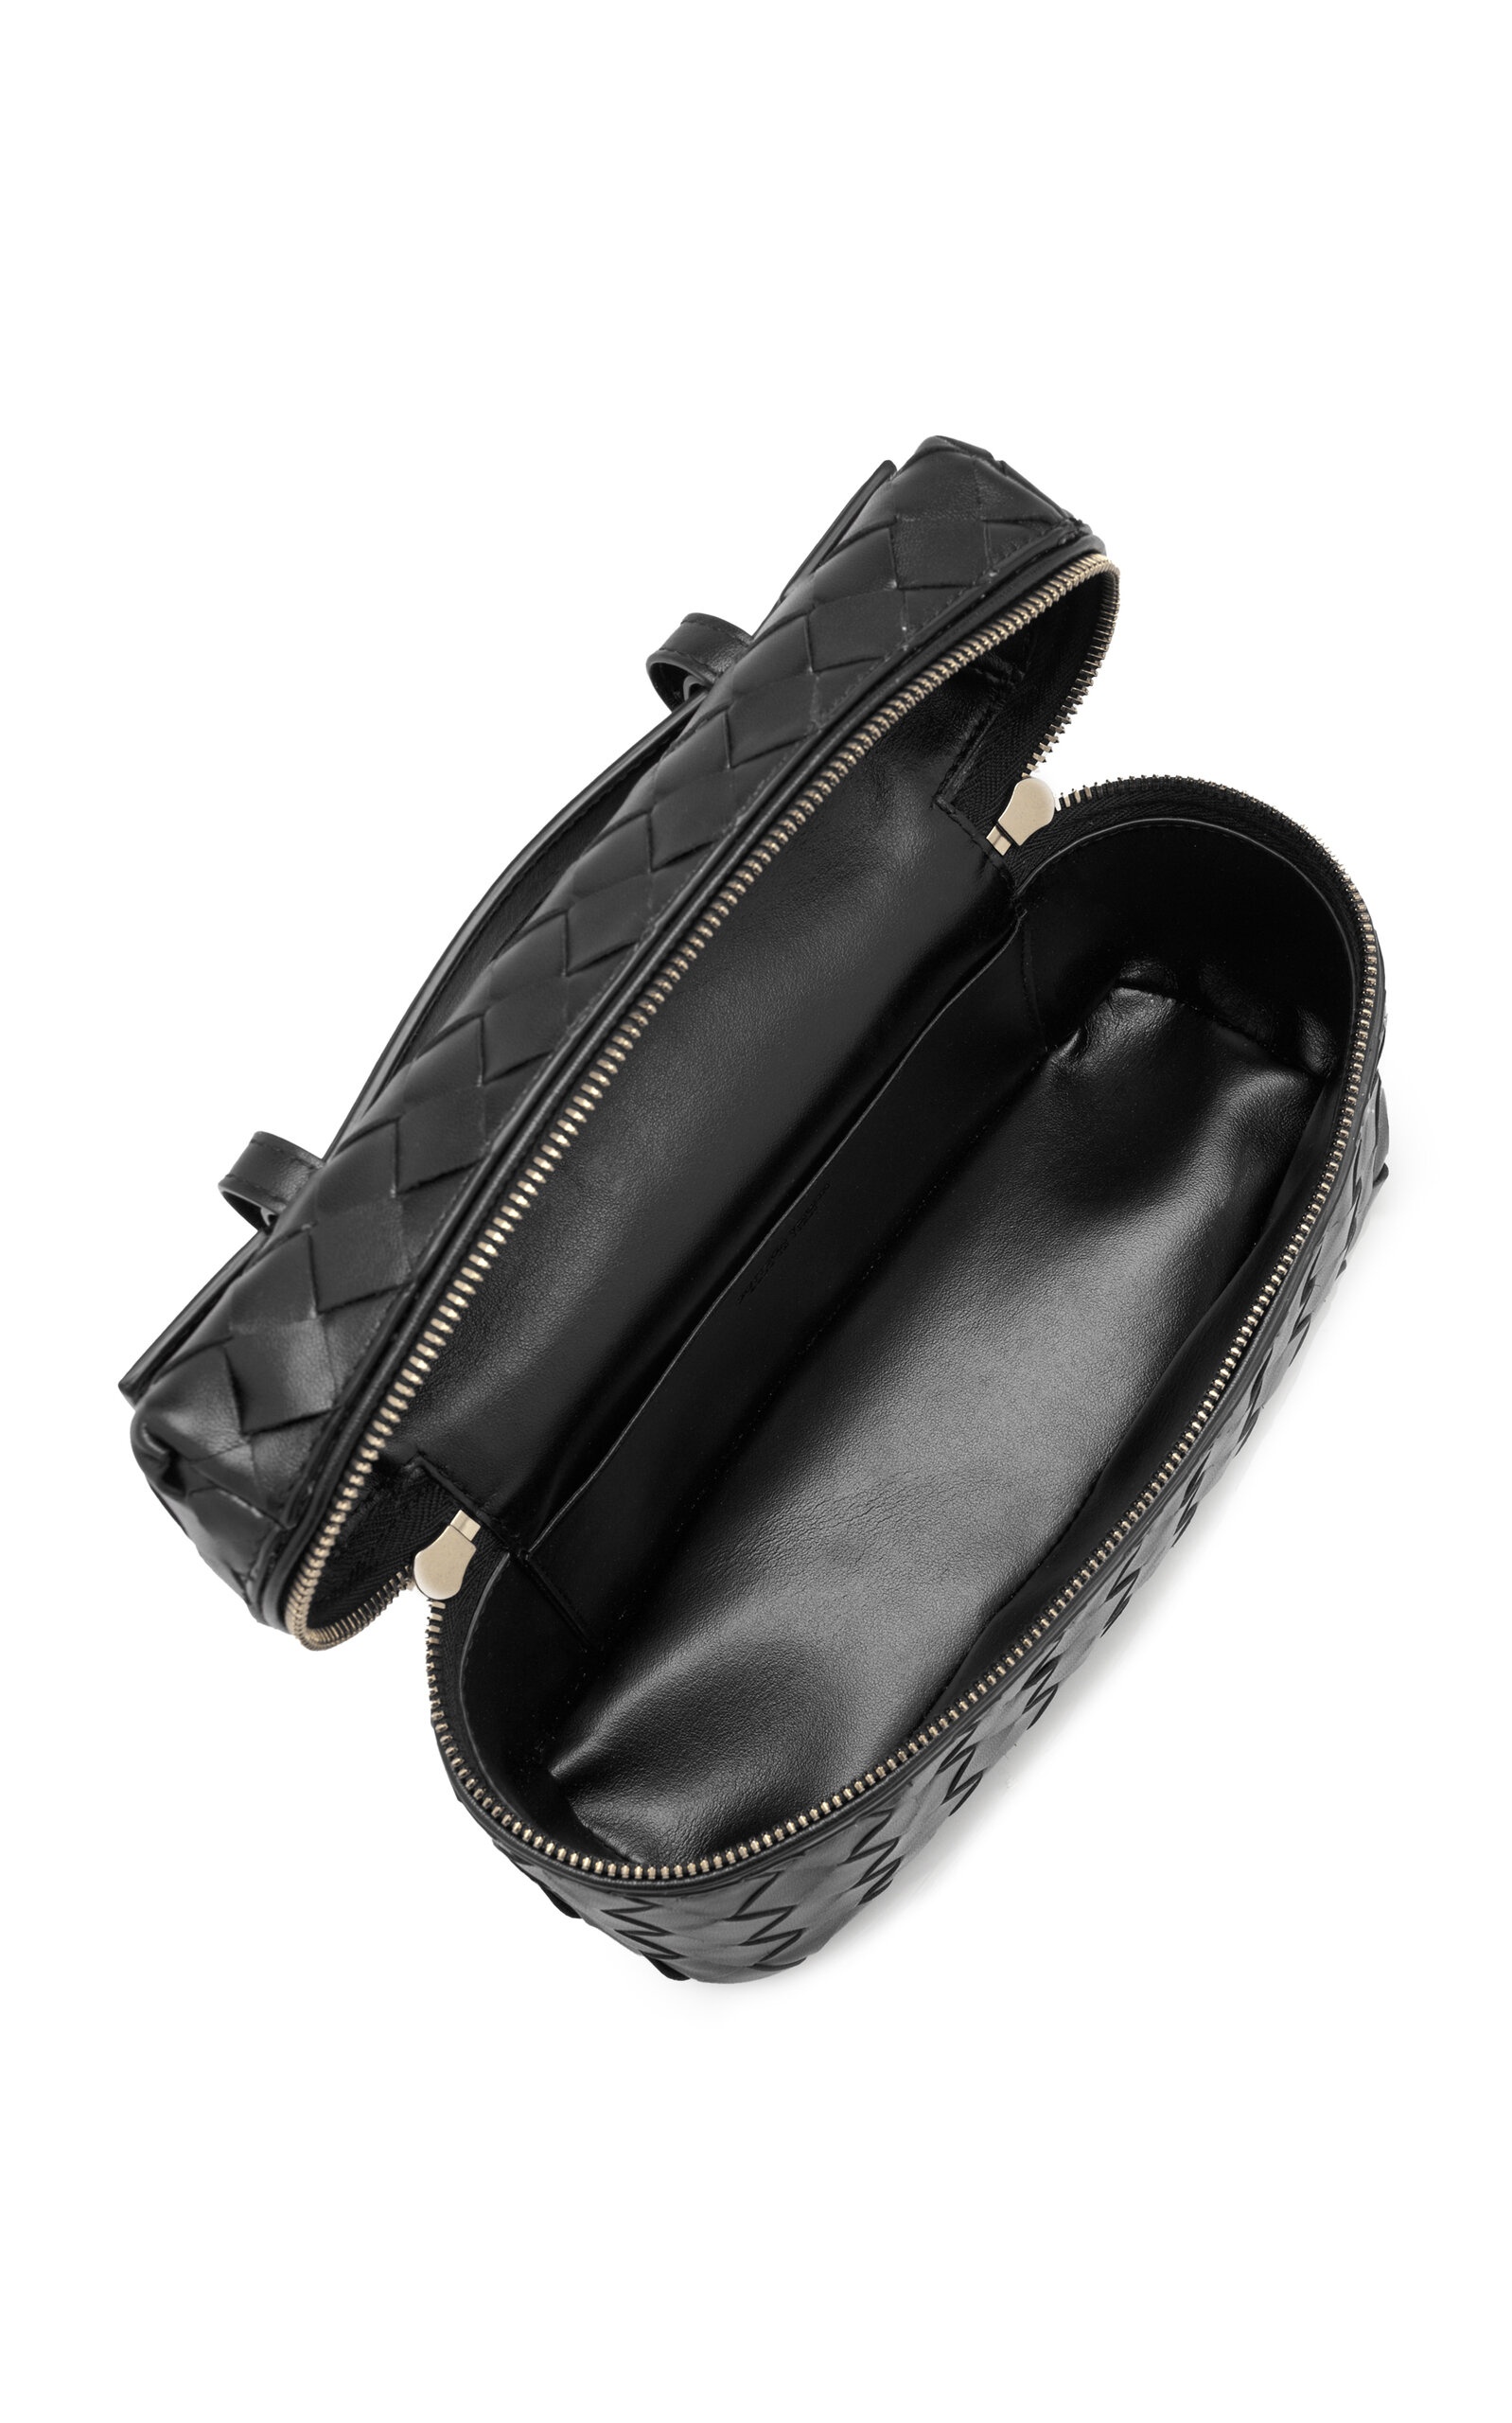 Intrecciato Leather Vanity Case black - 7